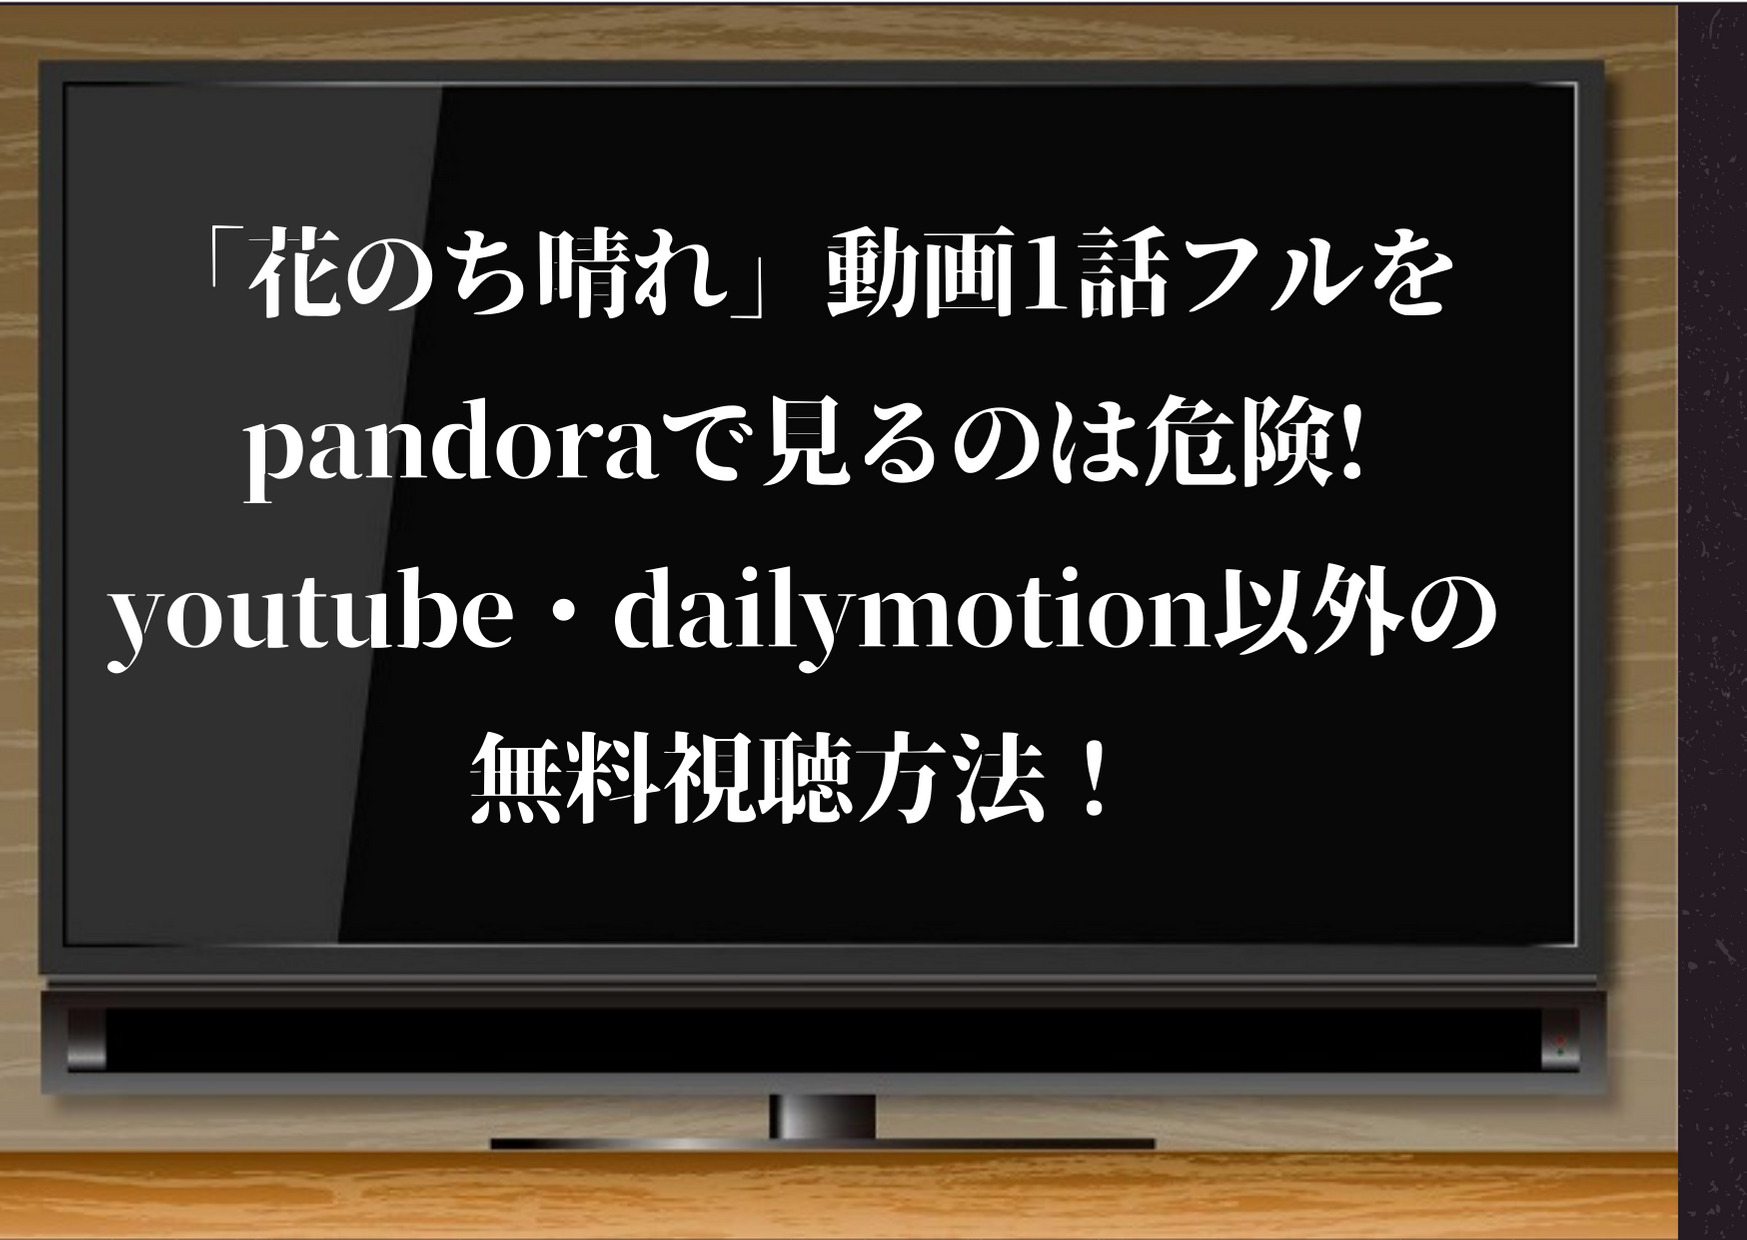 花のち晴れ,動画,1話,pandora,花のち晴れ〜花男 Next Season〜,フル,パンドラ,youtube,dailymotion